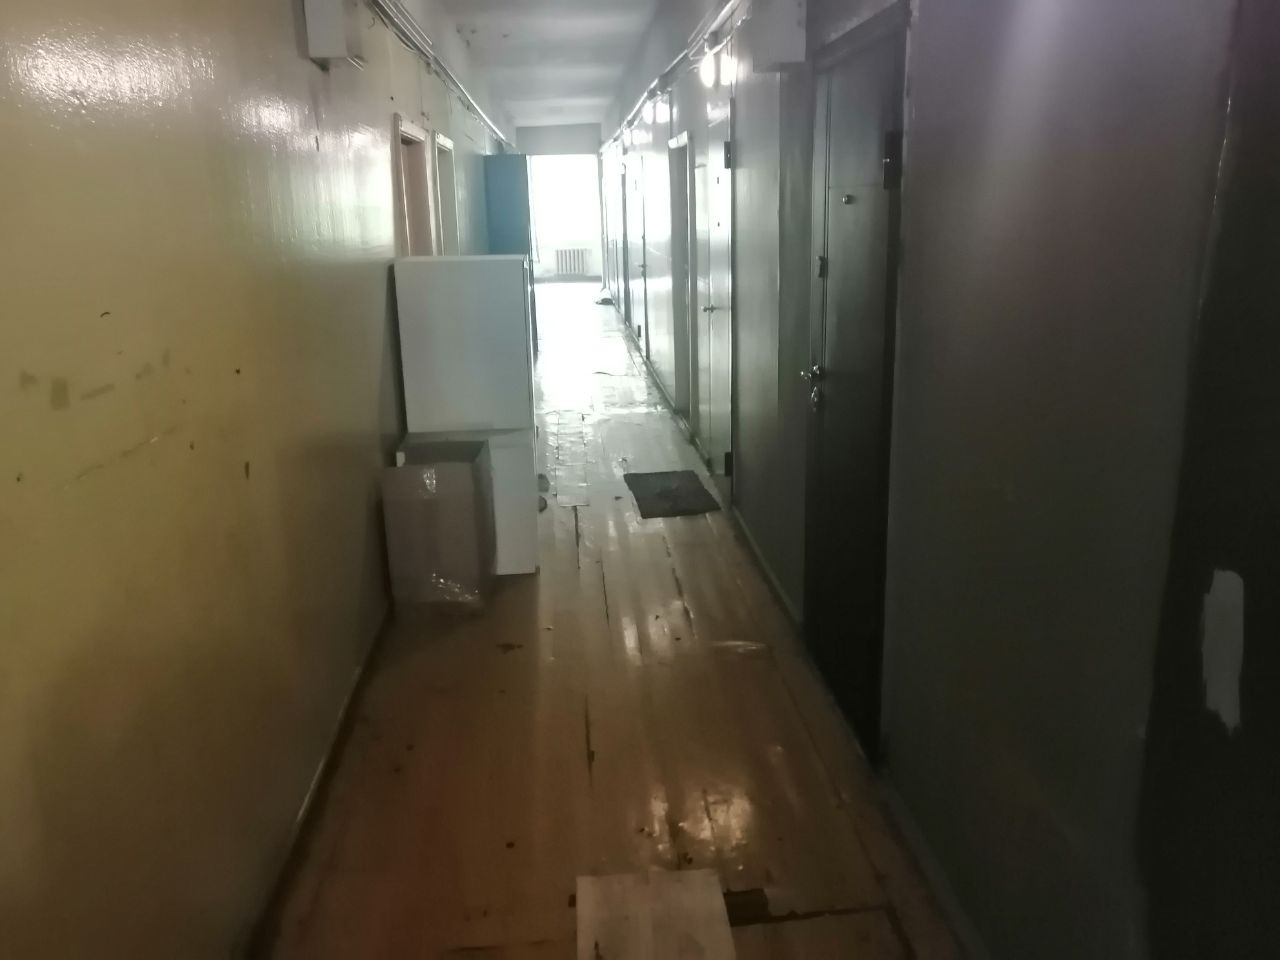 Система коридорная, на двадцать комнат один общий туалет